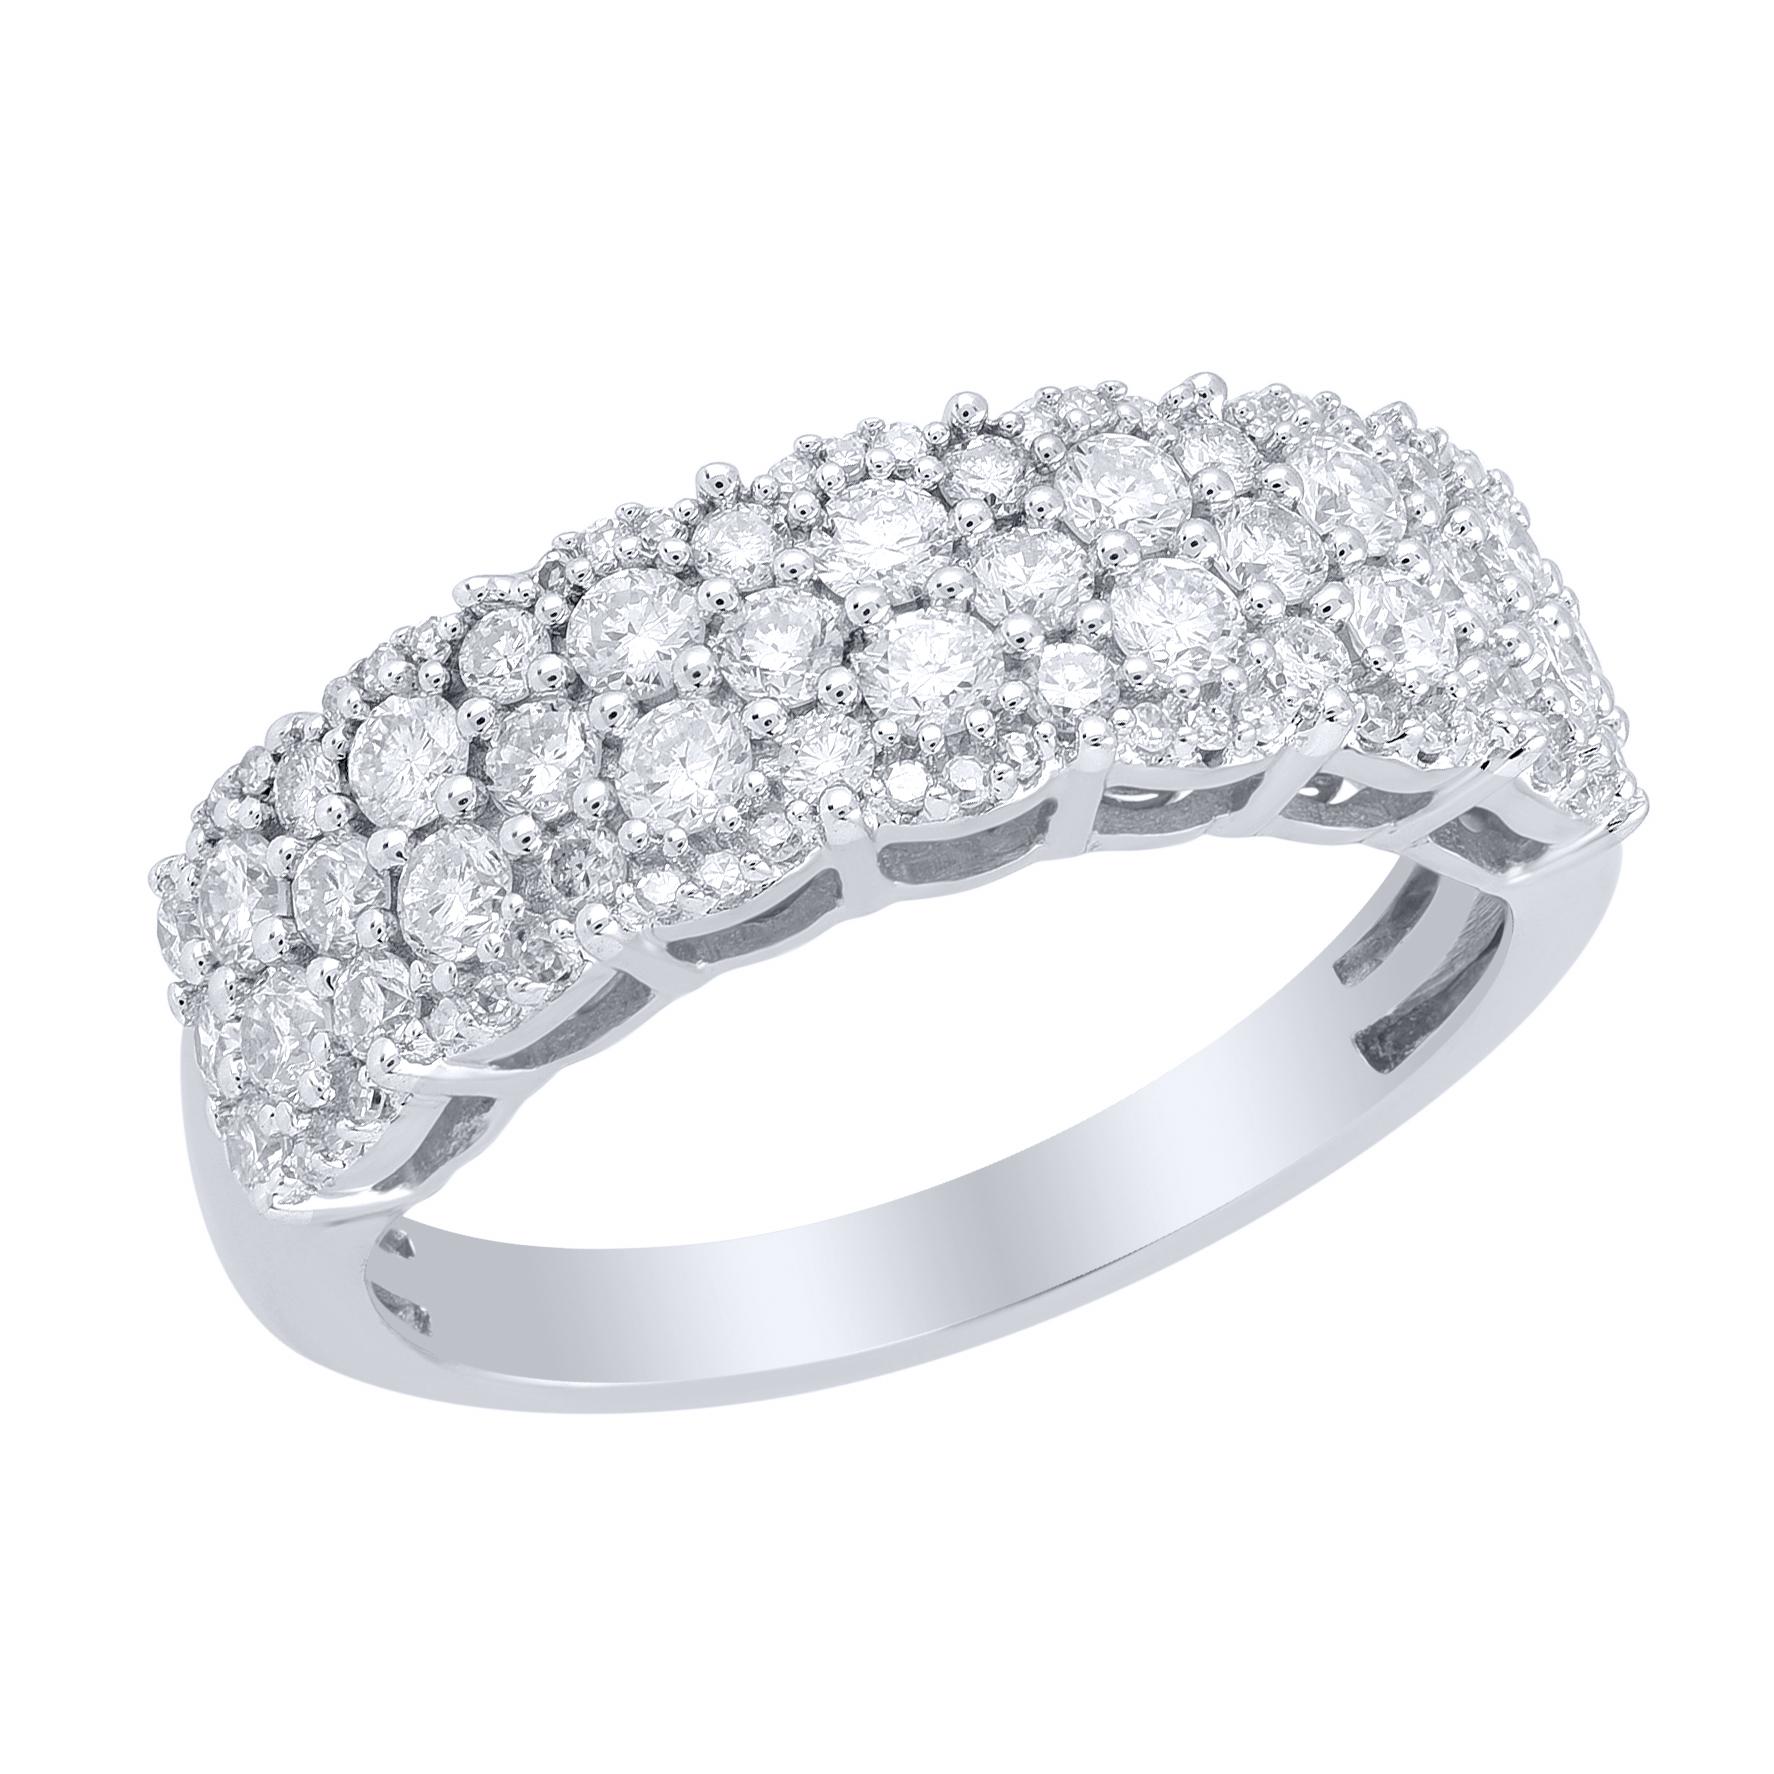 Ehren Sie Ihren besonderen Tag mit diesem außergewöhnlichen Diamantring. In diesem Ring funkeln 80 Diamanten im Brillantschliff und runde Diamanten im Einzelschliff in einer schönen Zackenfassung. Das Gesamtgewicht der Diamanten beträgt 1,0 Karat.